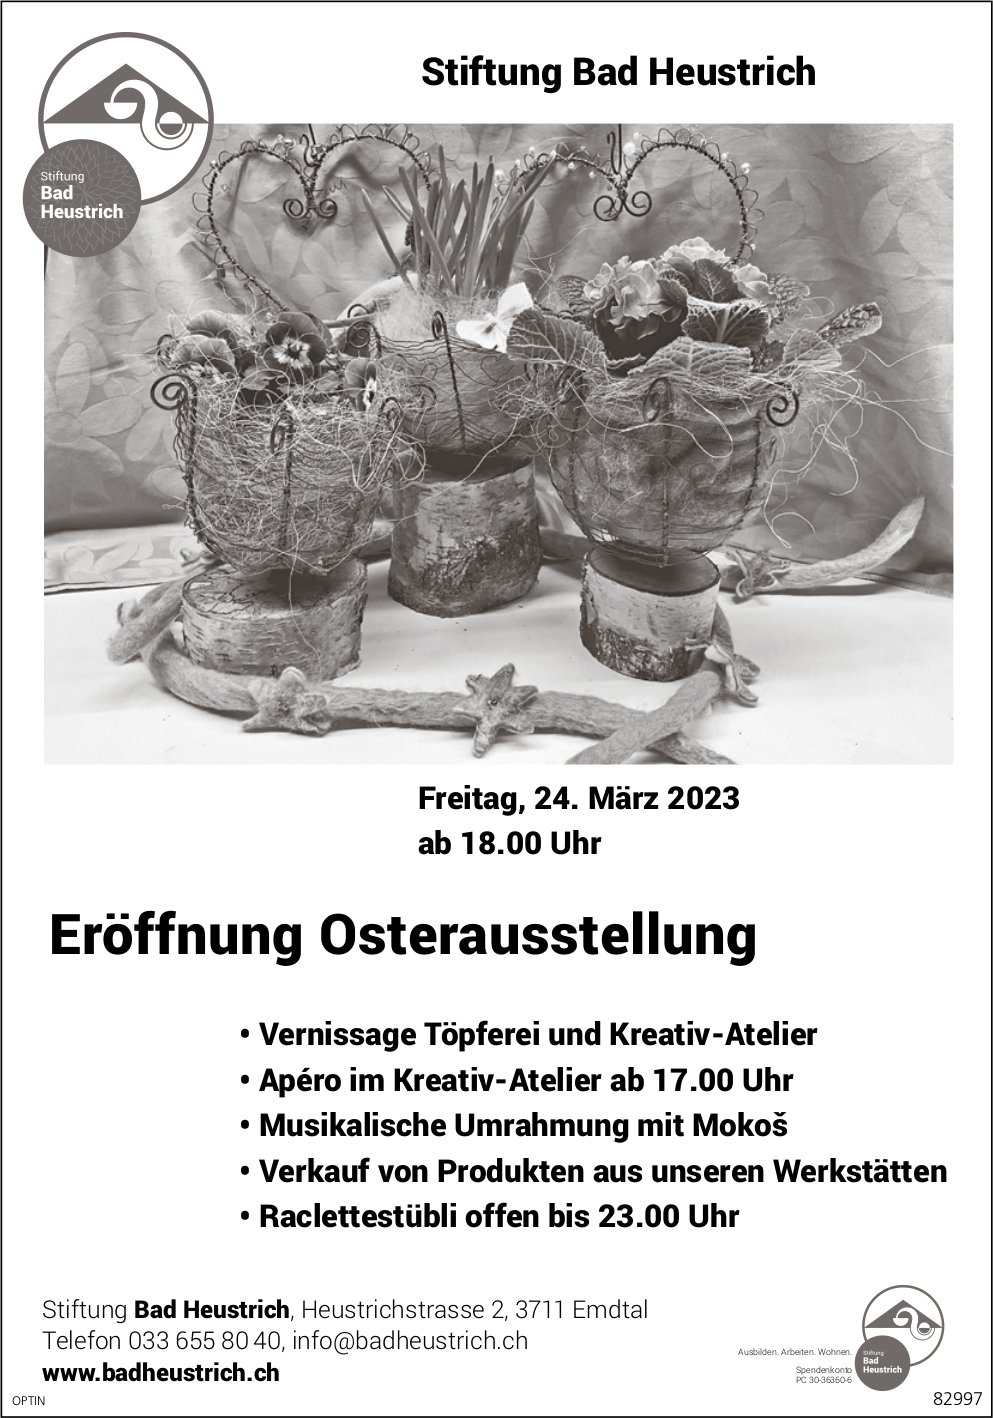 Eröffnung Osterausstellung, 24. März, Stiftung Bad Heustrich, Emdtal